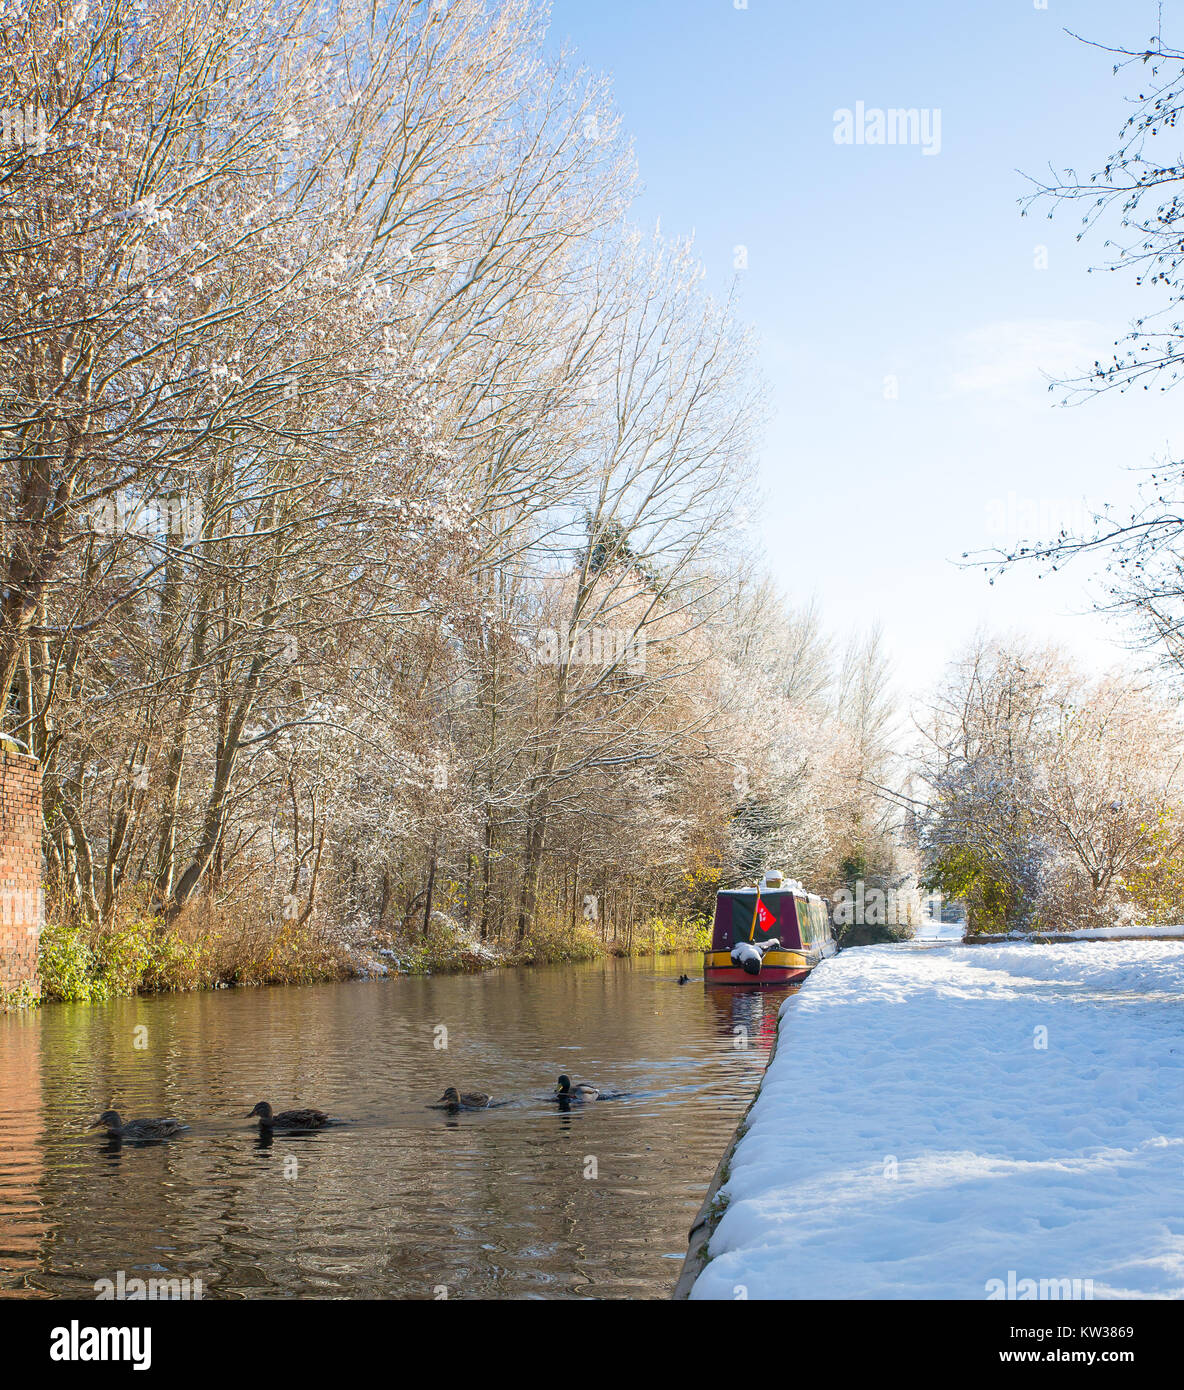 Canales británicos en invierno. UK narrowboat amarrado junto al camino de sirga cubiertas de nieve en el sol por la mañana. Canal Boat vida en la nieve. Foto de stock